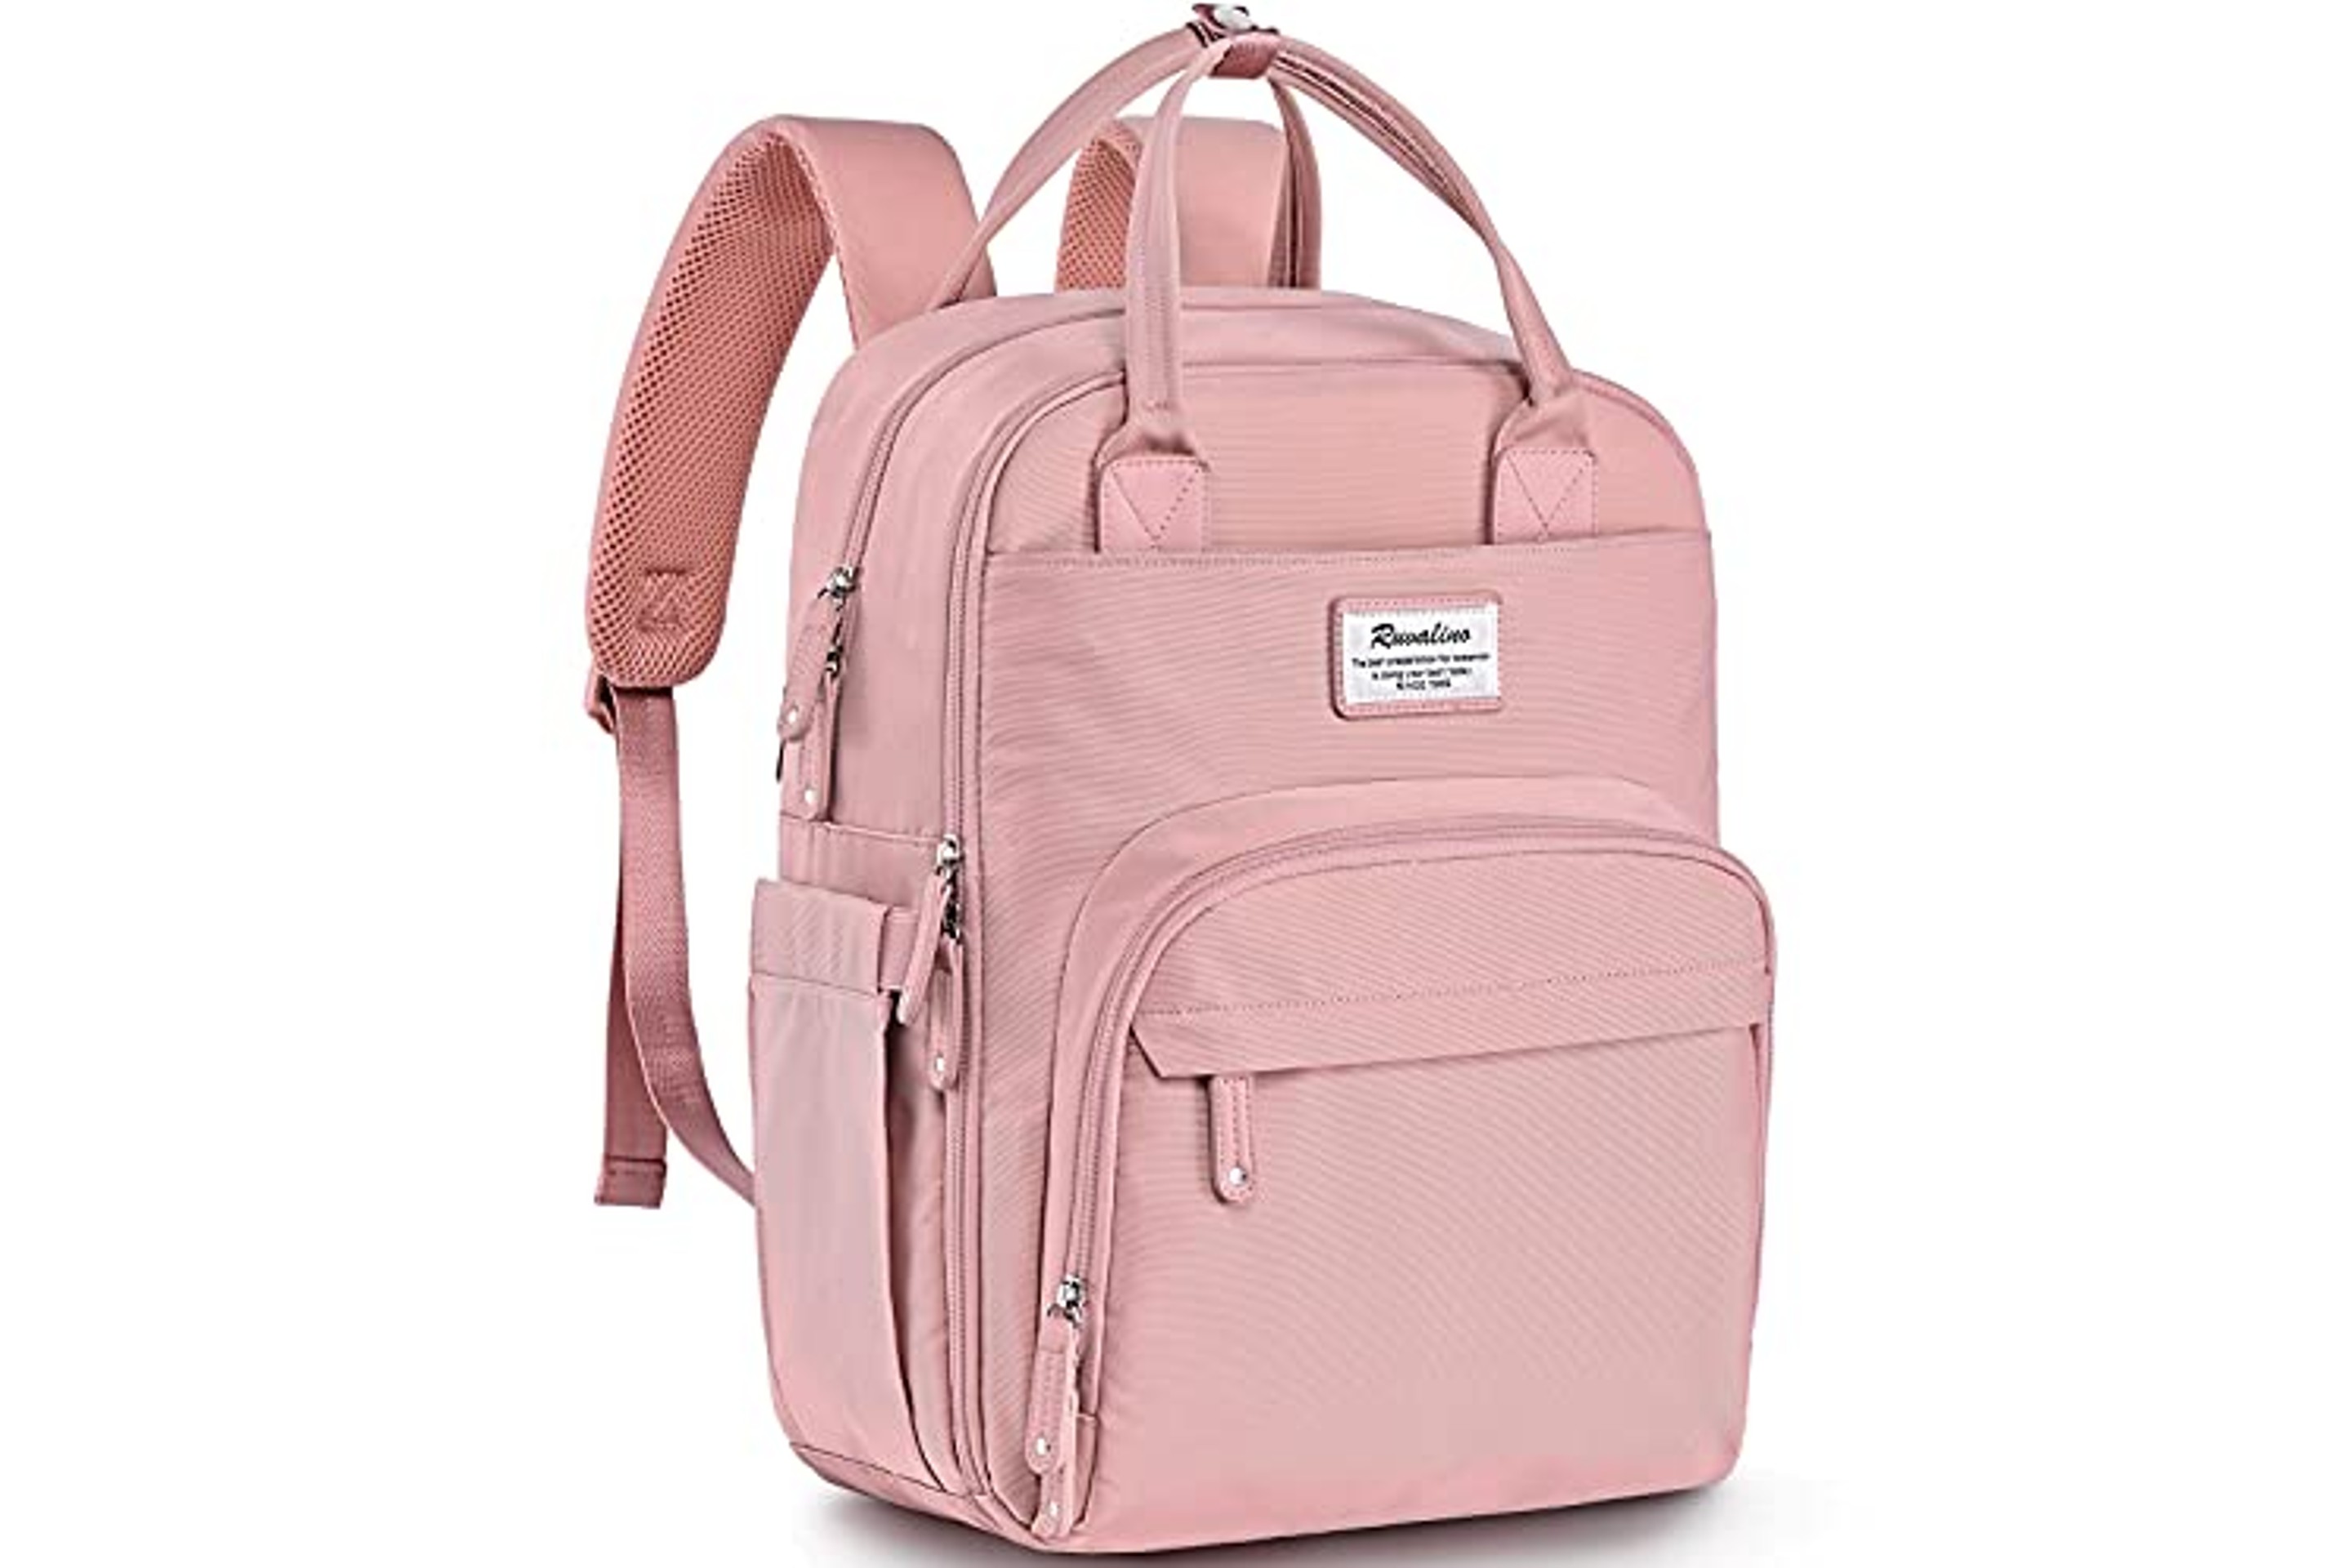 Ruvalino Pink Diaper Bag Backpack